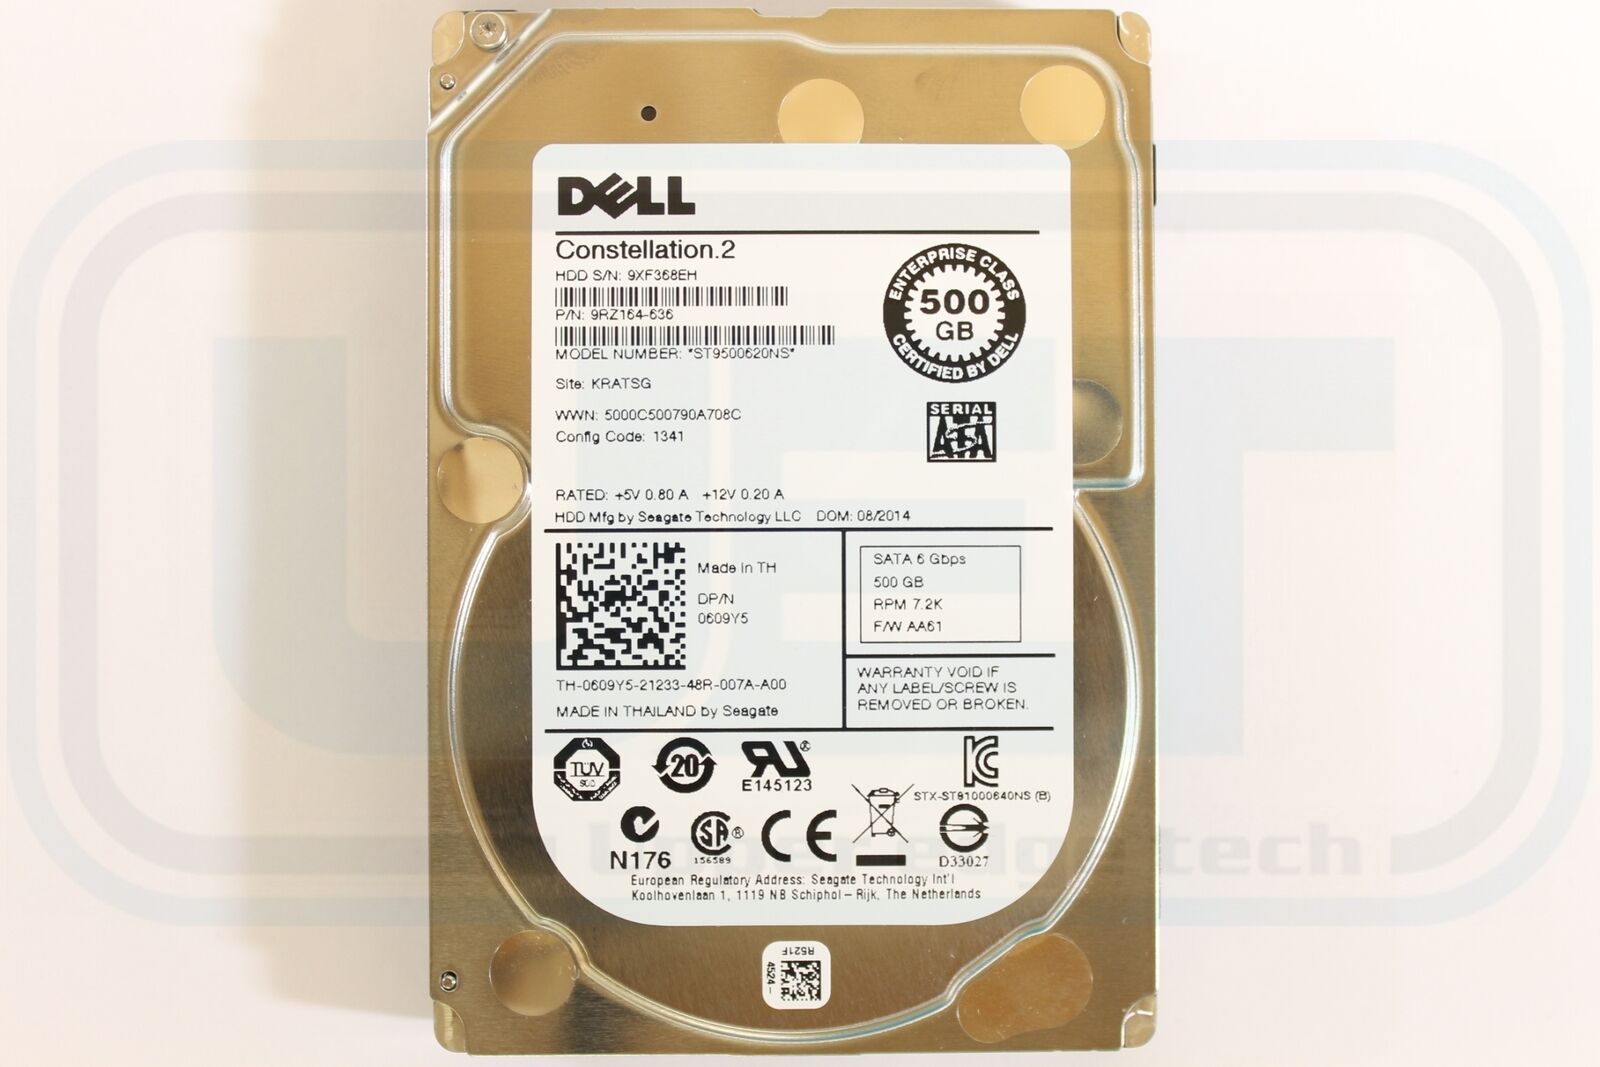 Dell 609Y5 Enterprise Server 15mm 2.5 500GB 7200 HDD SATA Tested Warranty